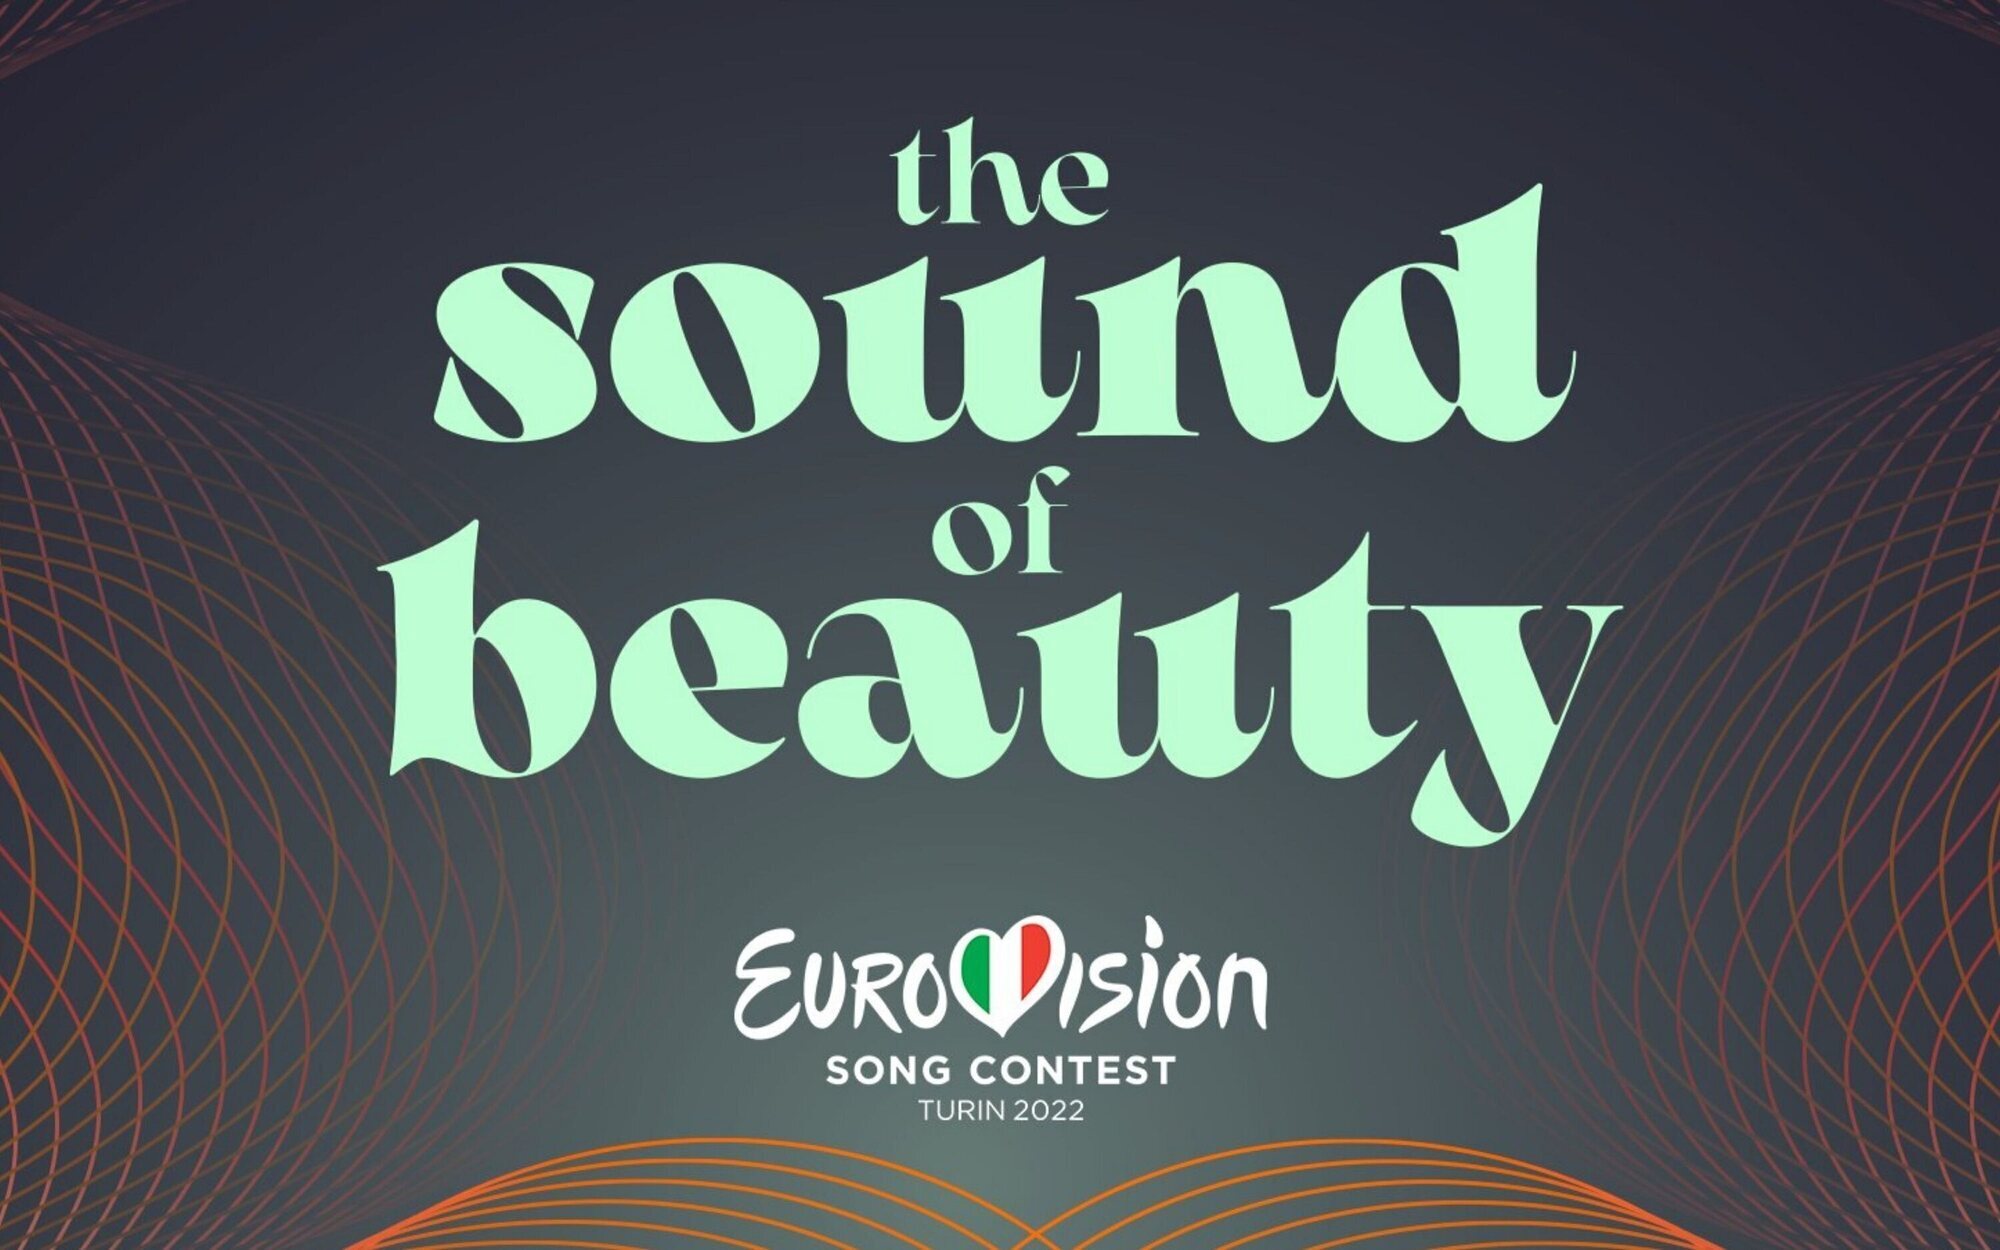 Eurovisión 2022 descubre su logo y el lema con el que invita a los espectadores a Turín: "The sound of beauty"